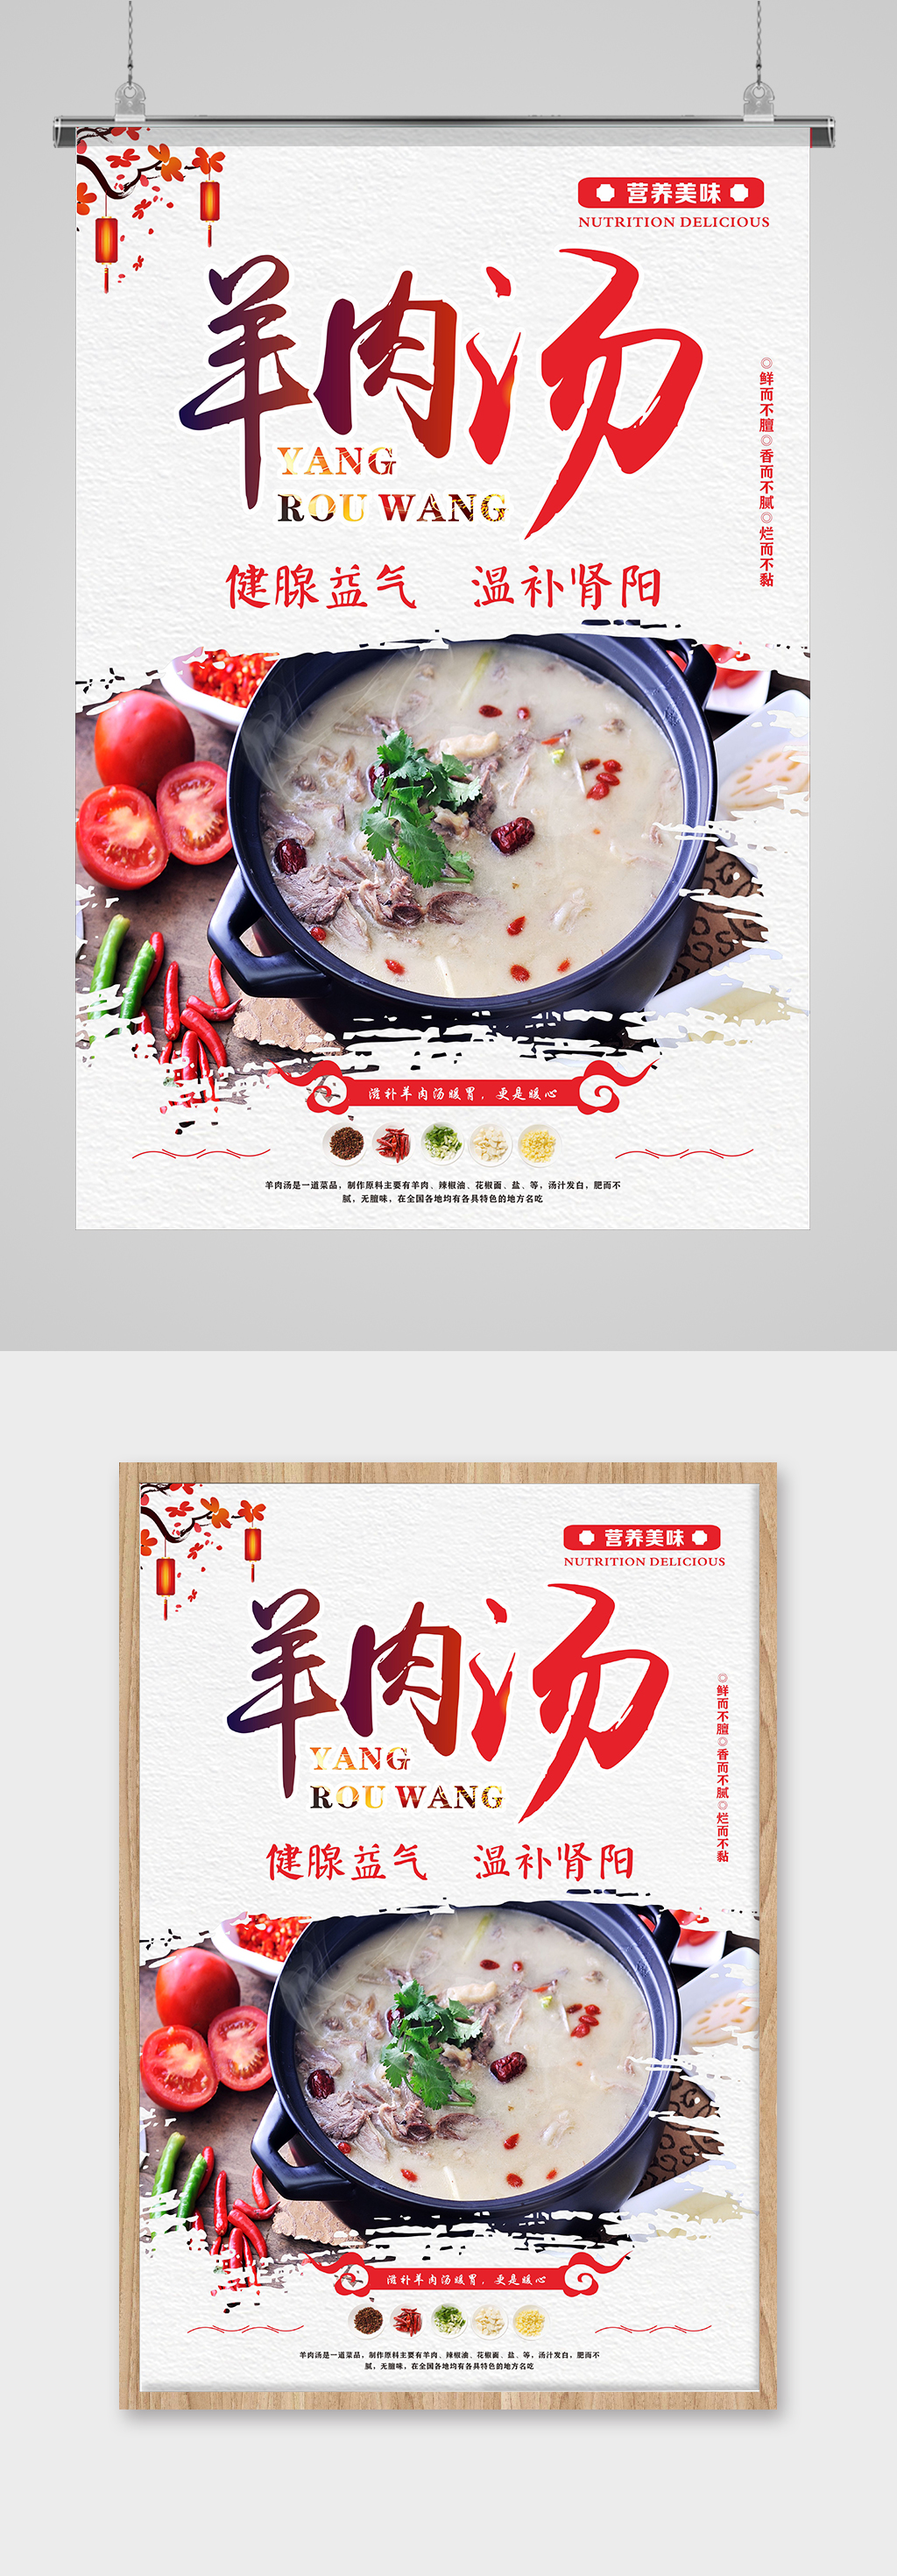 砂锅羊肉广告图片高清图片